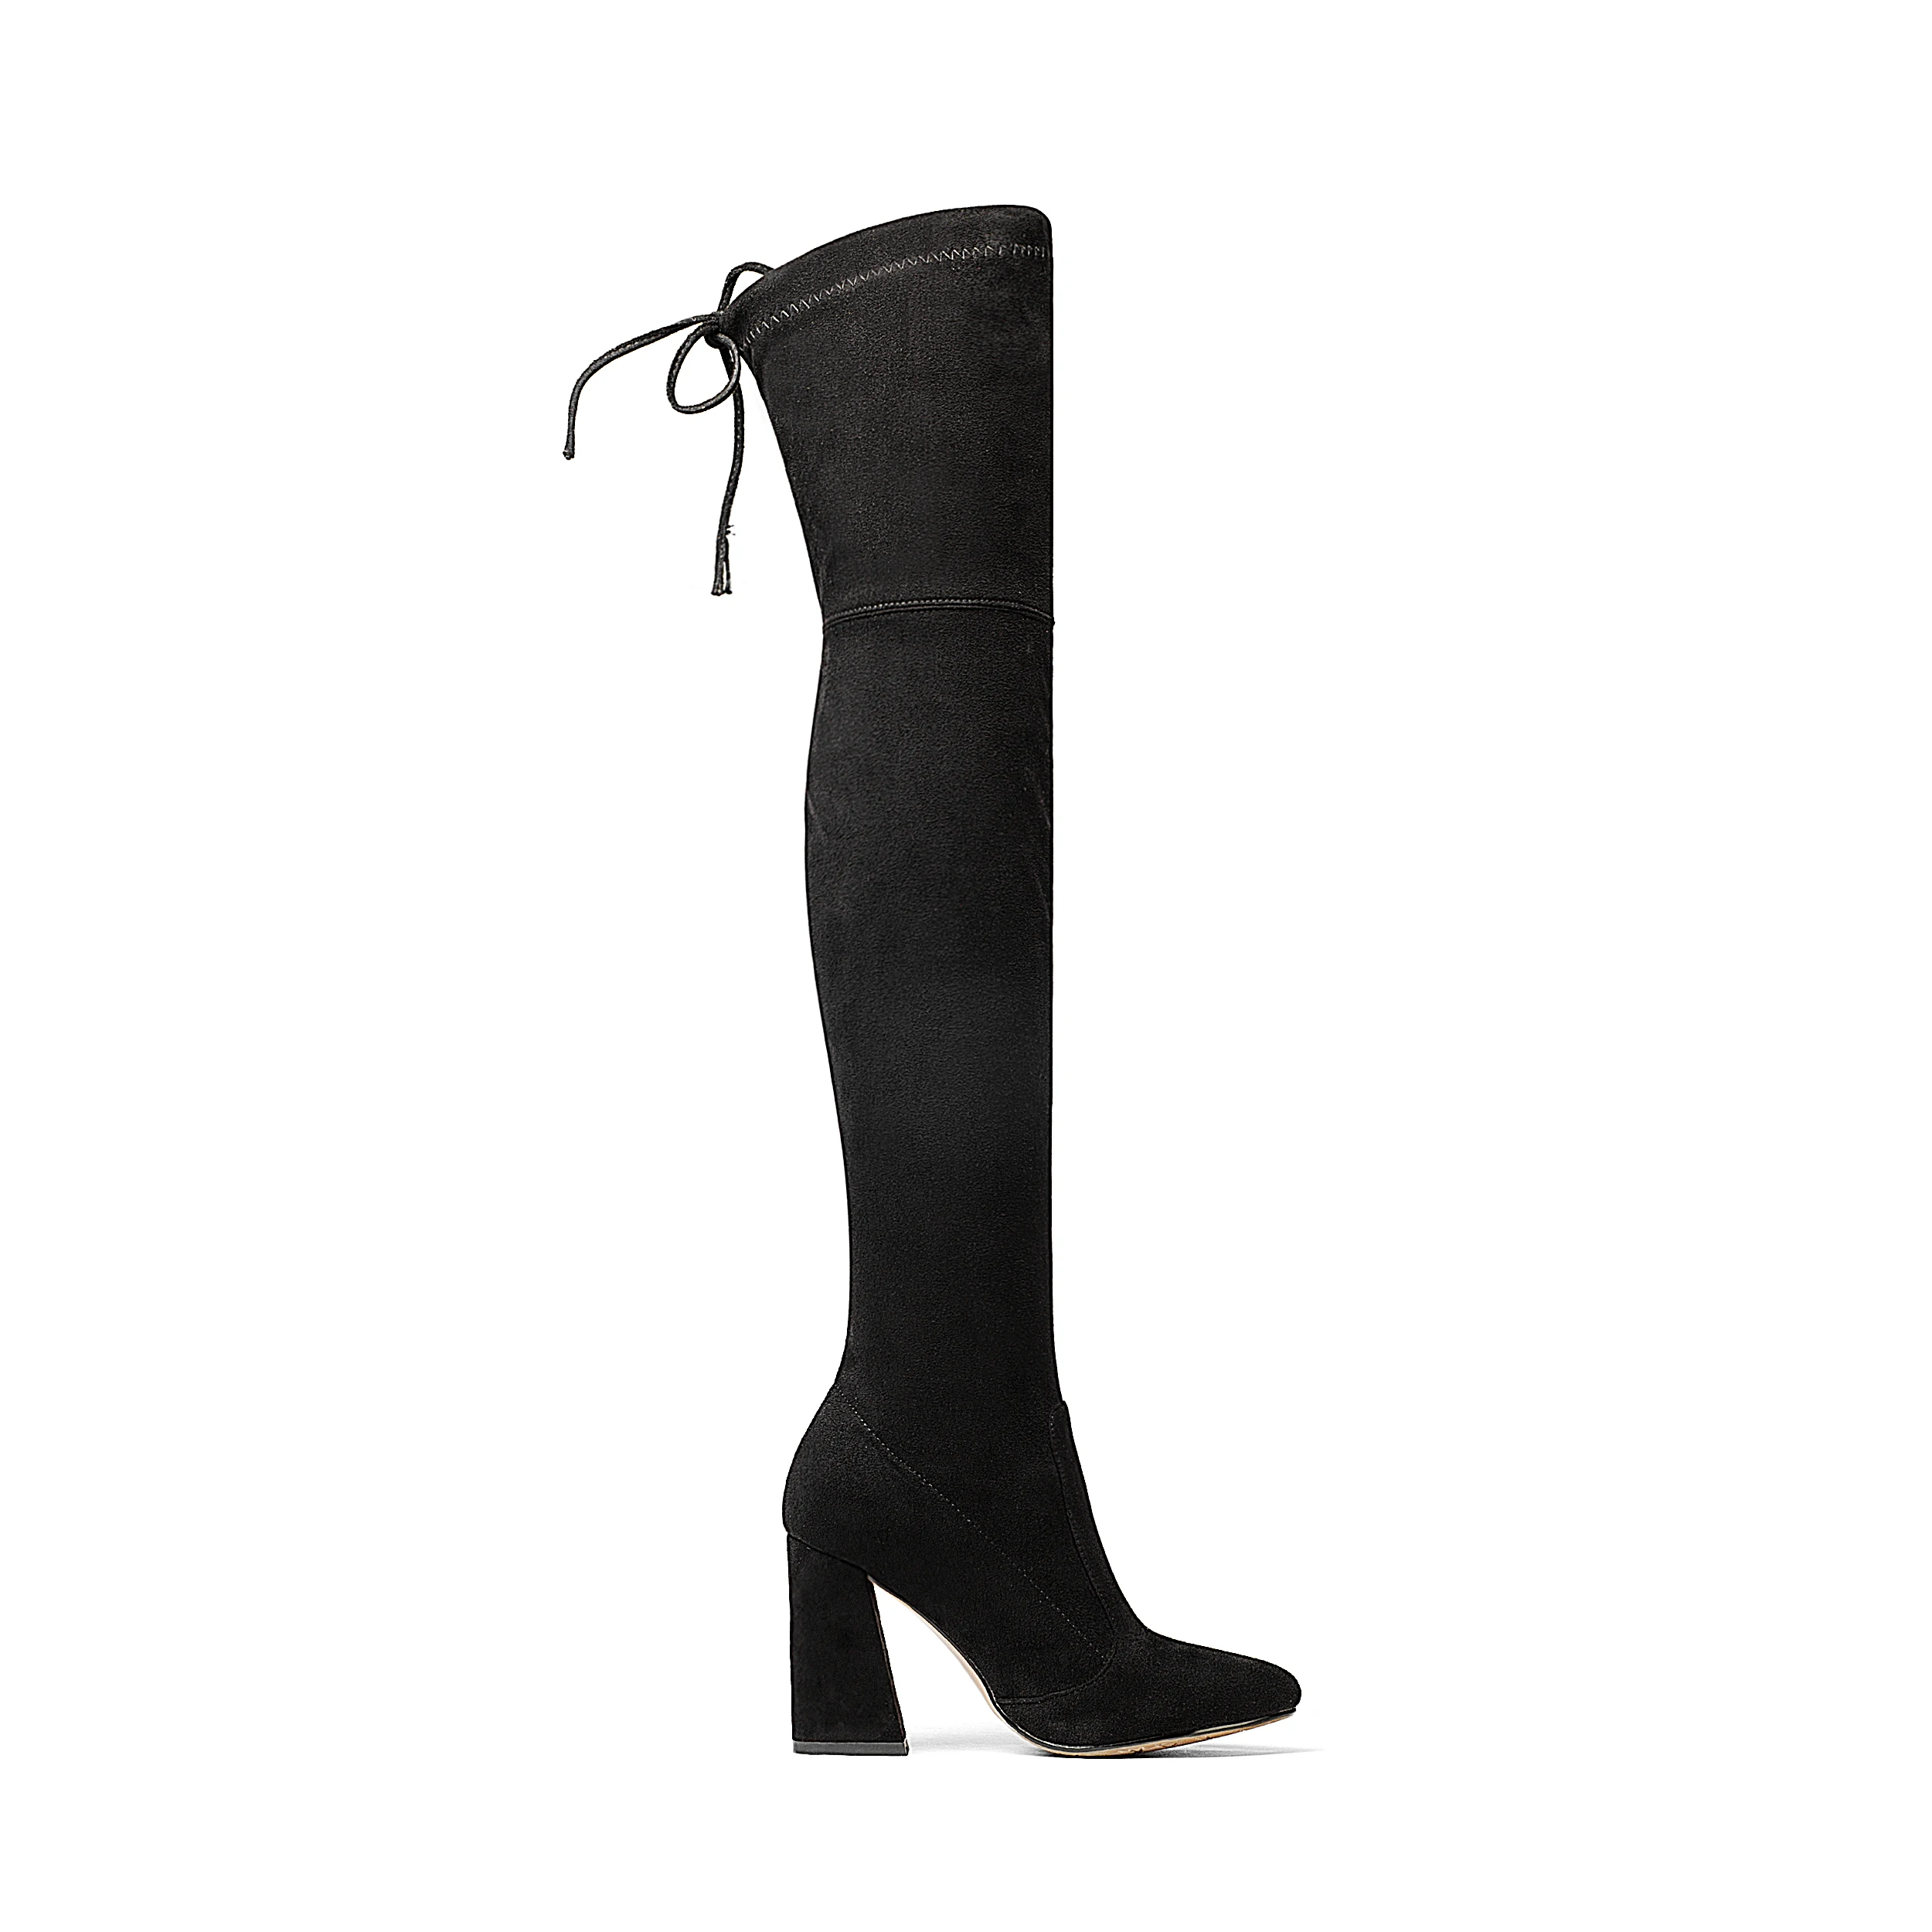 NEMAONE/женские эластичные замшевые ботфорты выше колена; сапоги до бедра; пикантная модная обувь на высоком каблуке размера плюс; женская обувь; коллекция года; Цвет черный, коричневый